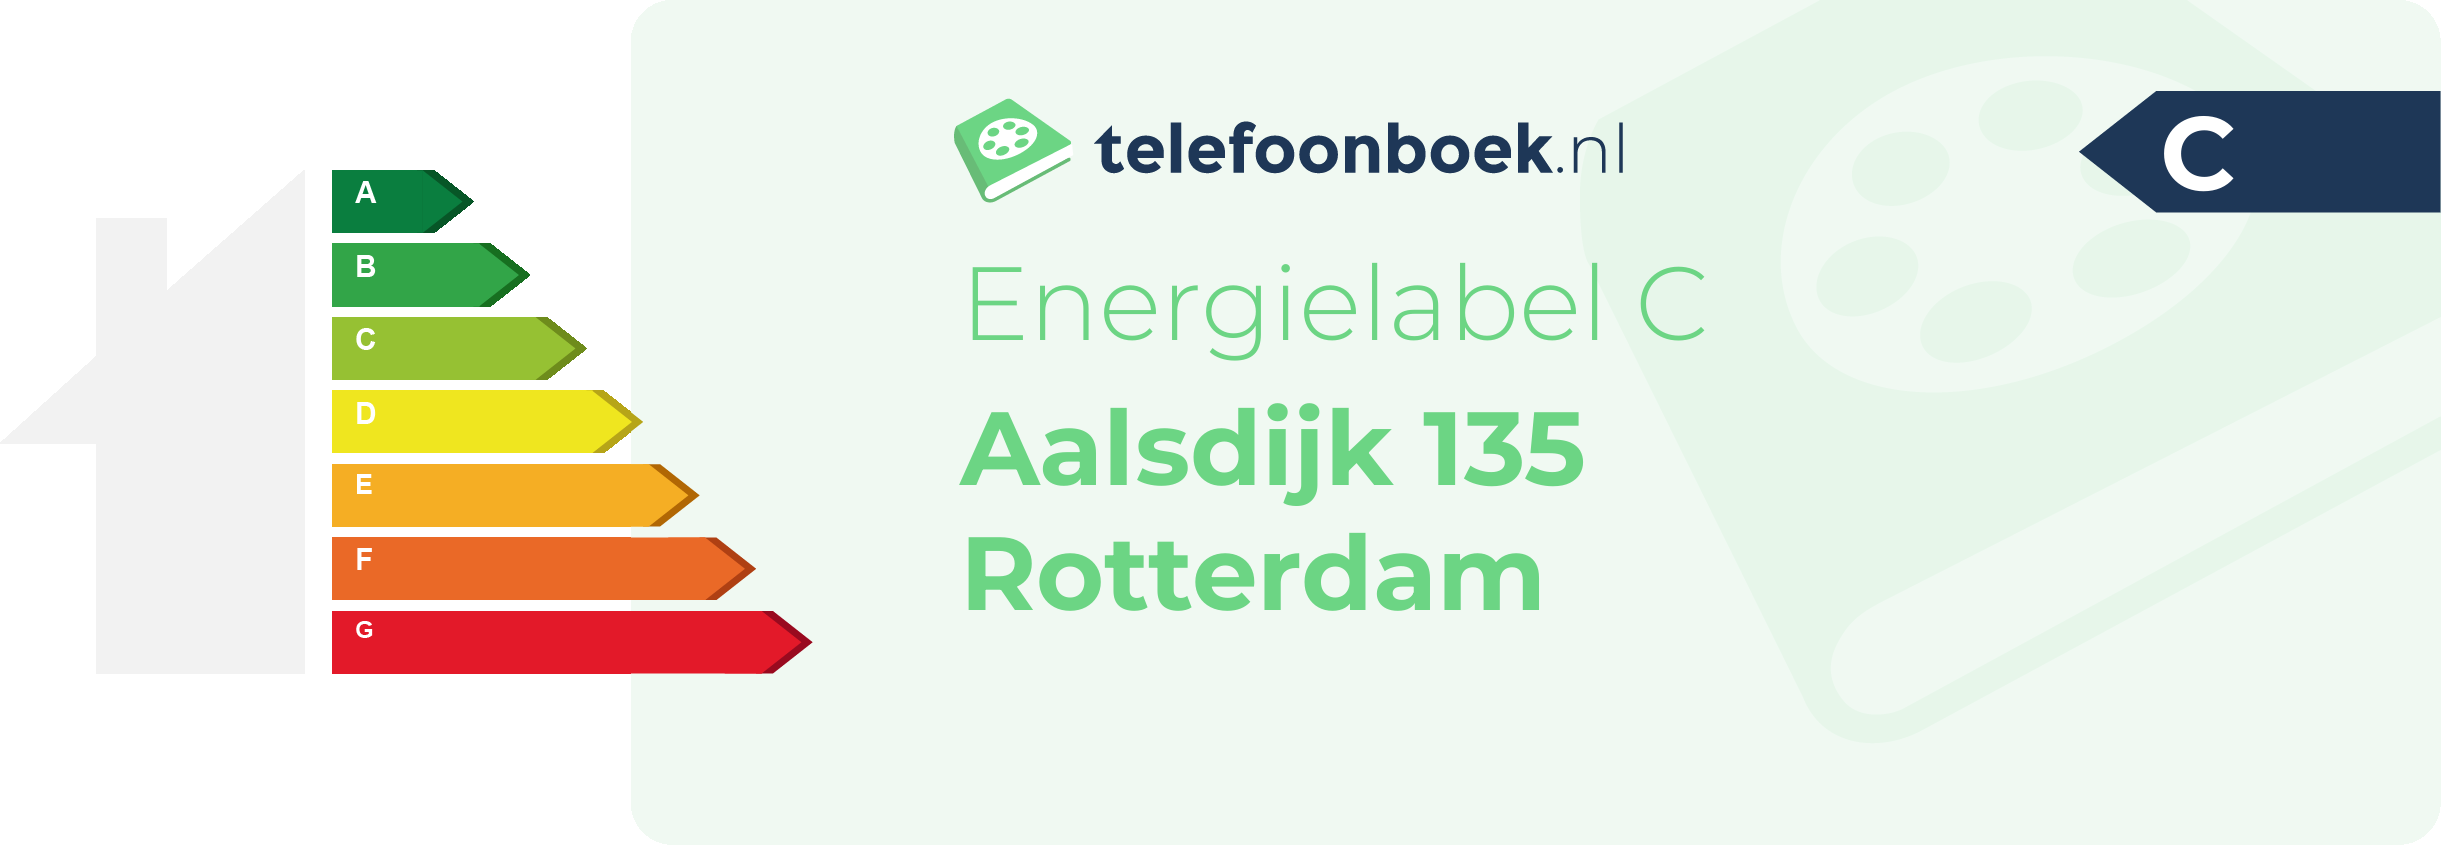 Energielabel Aalsdijk 135 Rotterdam